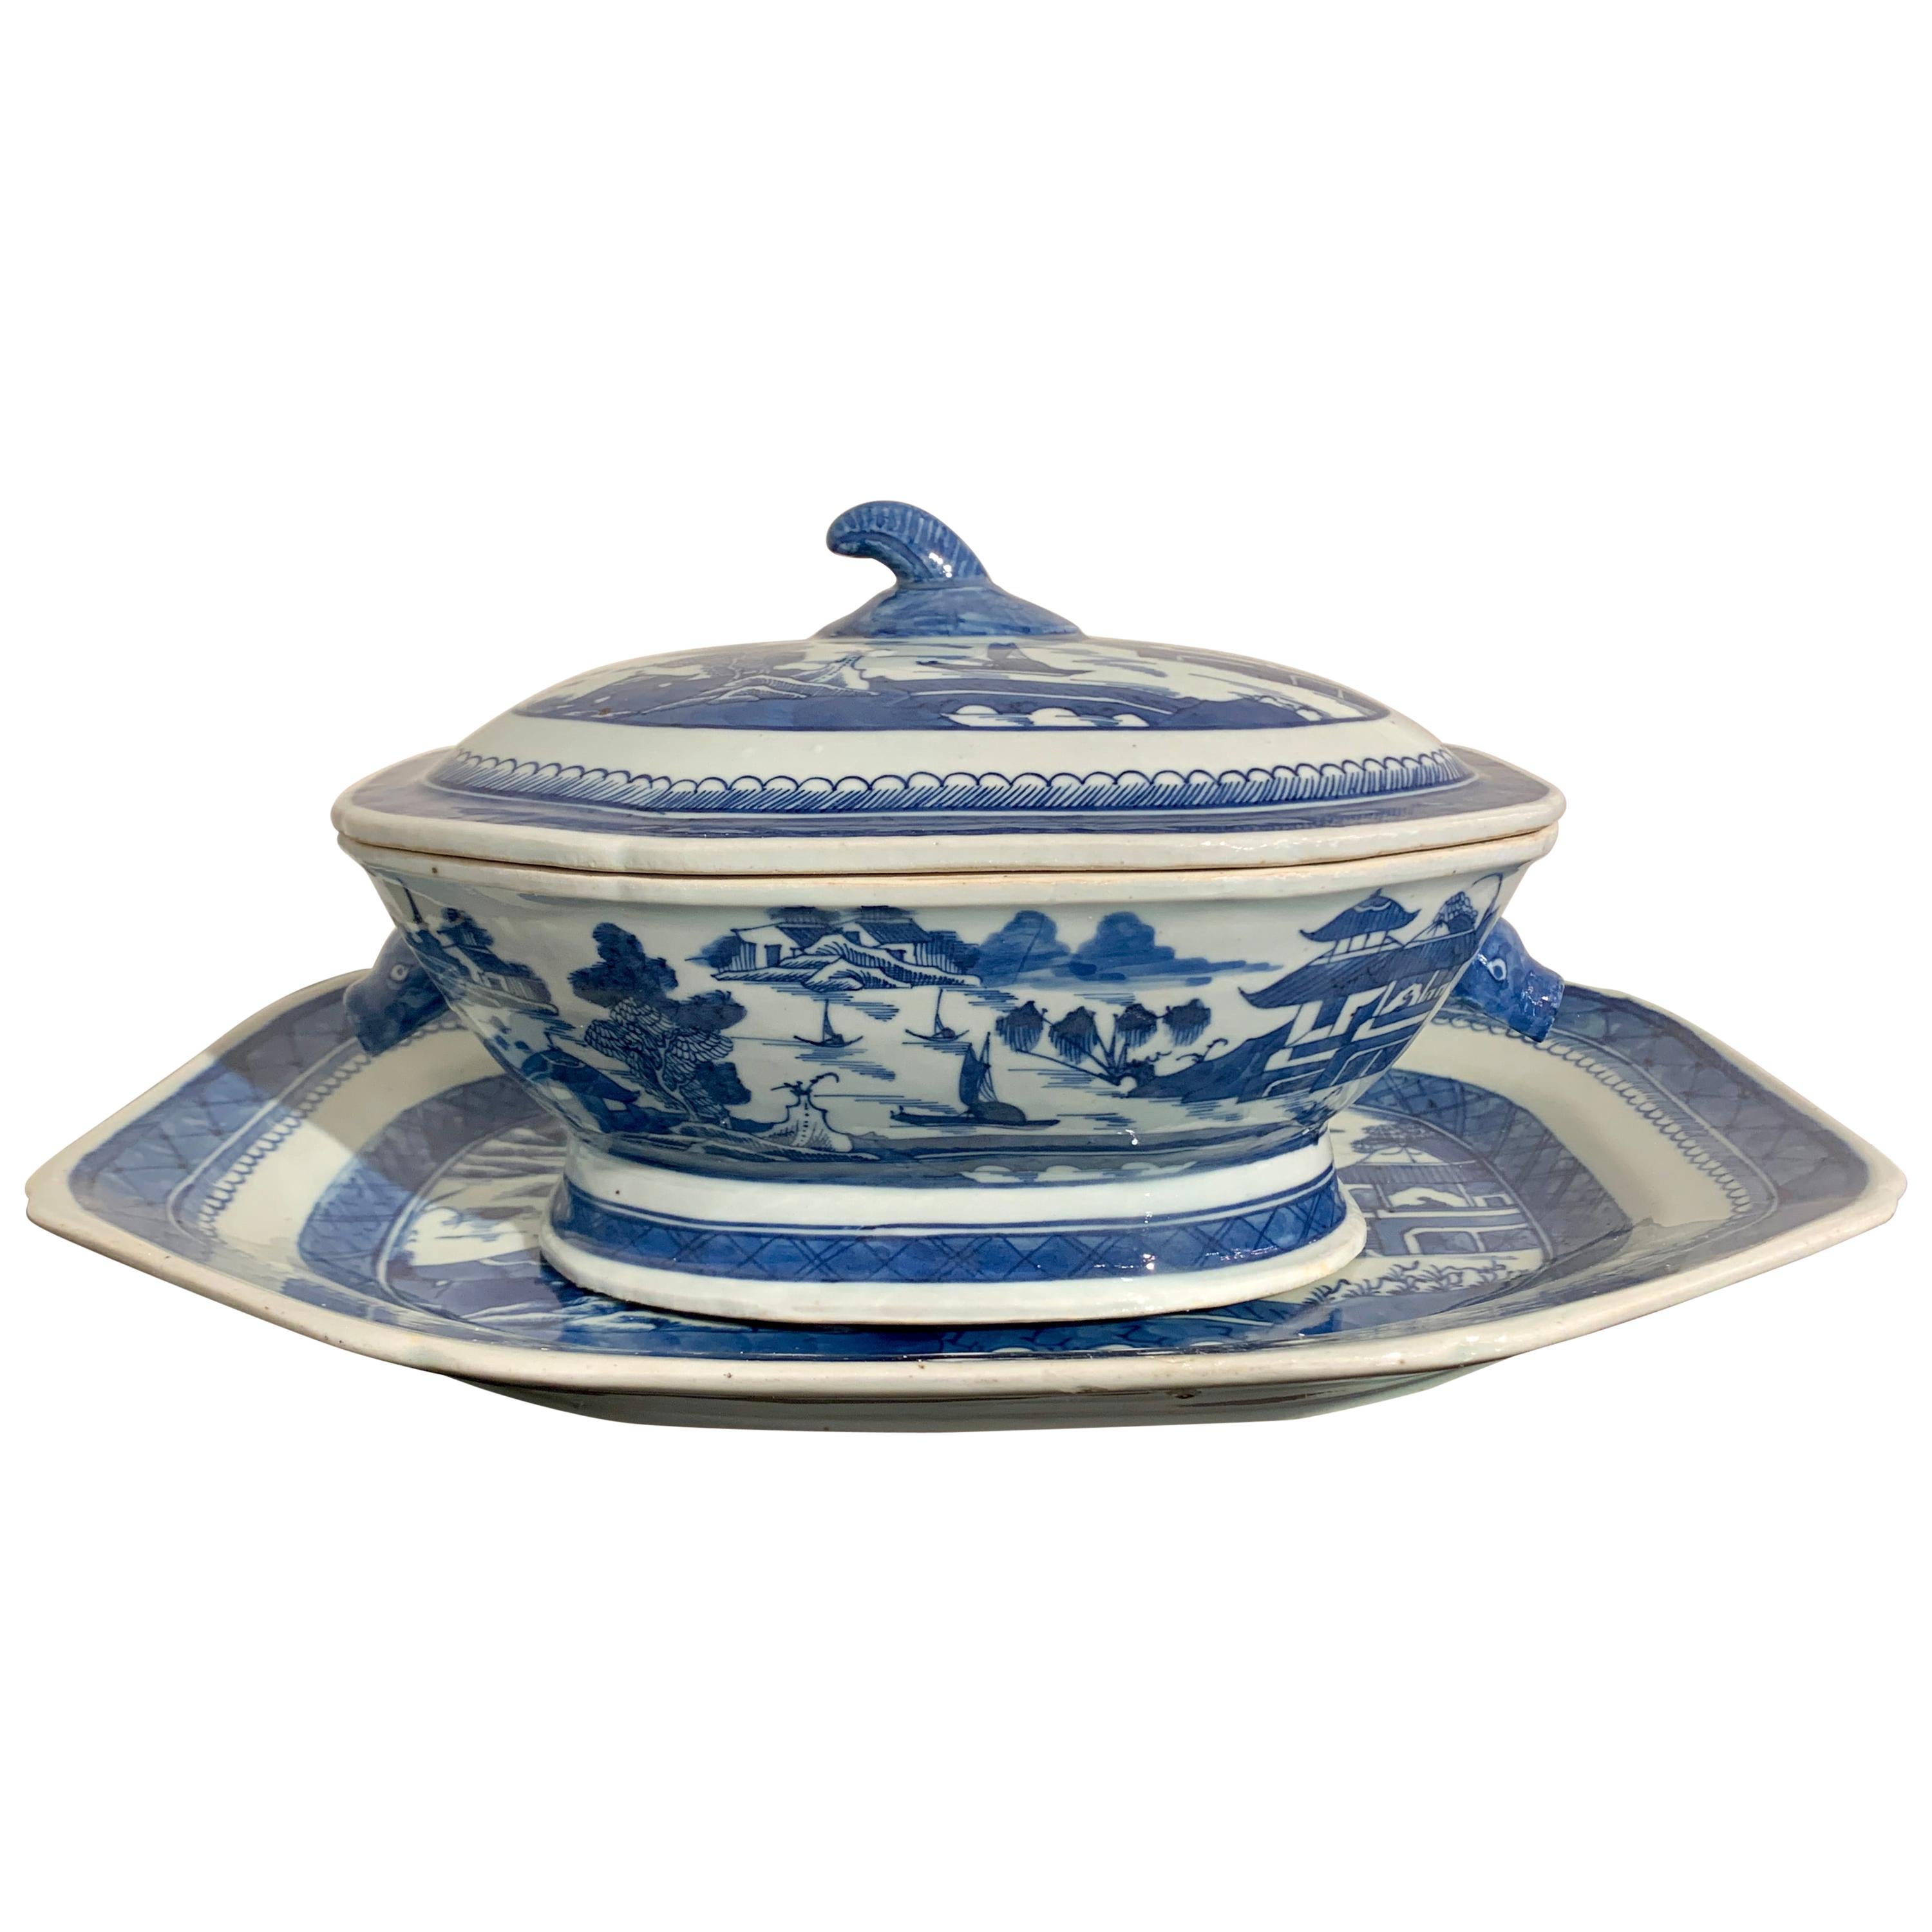 Chinesische Export Terrine und Teller aus blauem und weißem Porzellan mit Deckel, 19. Jahrhundert